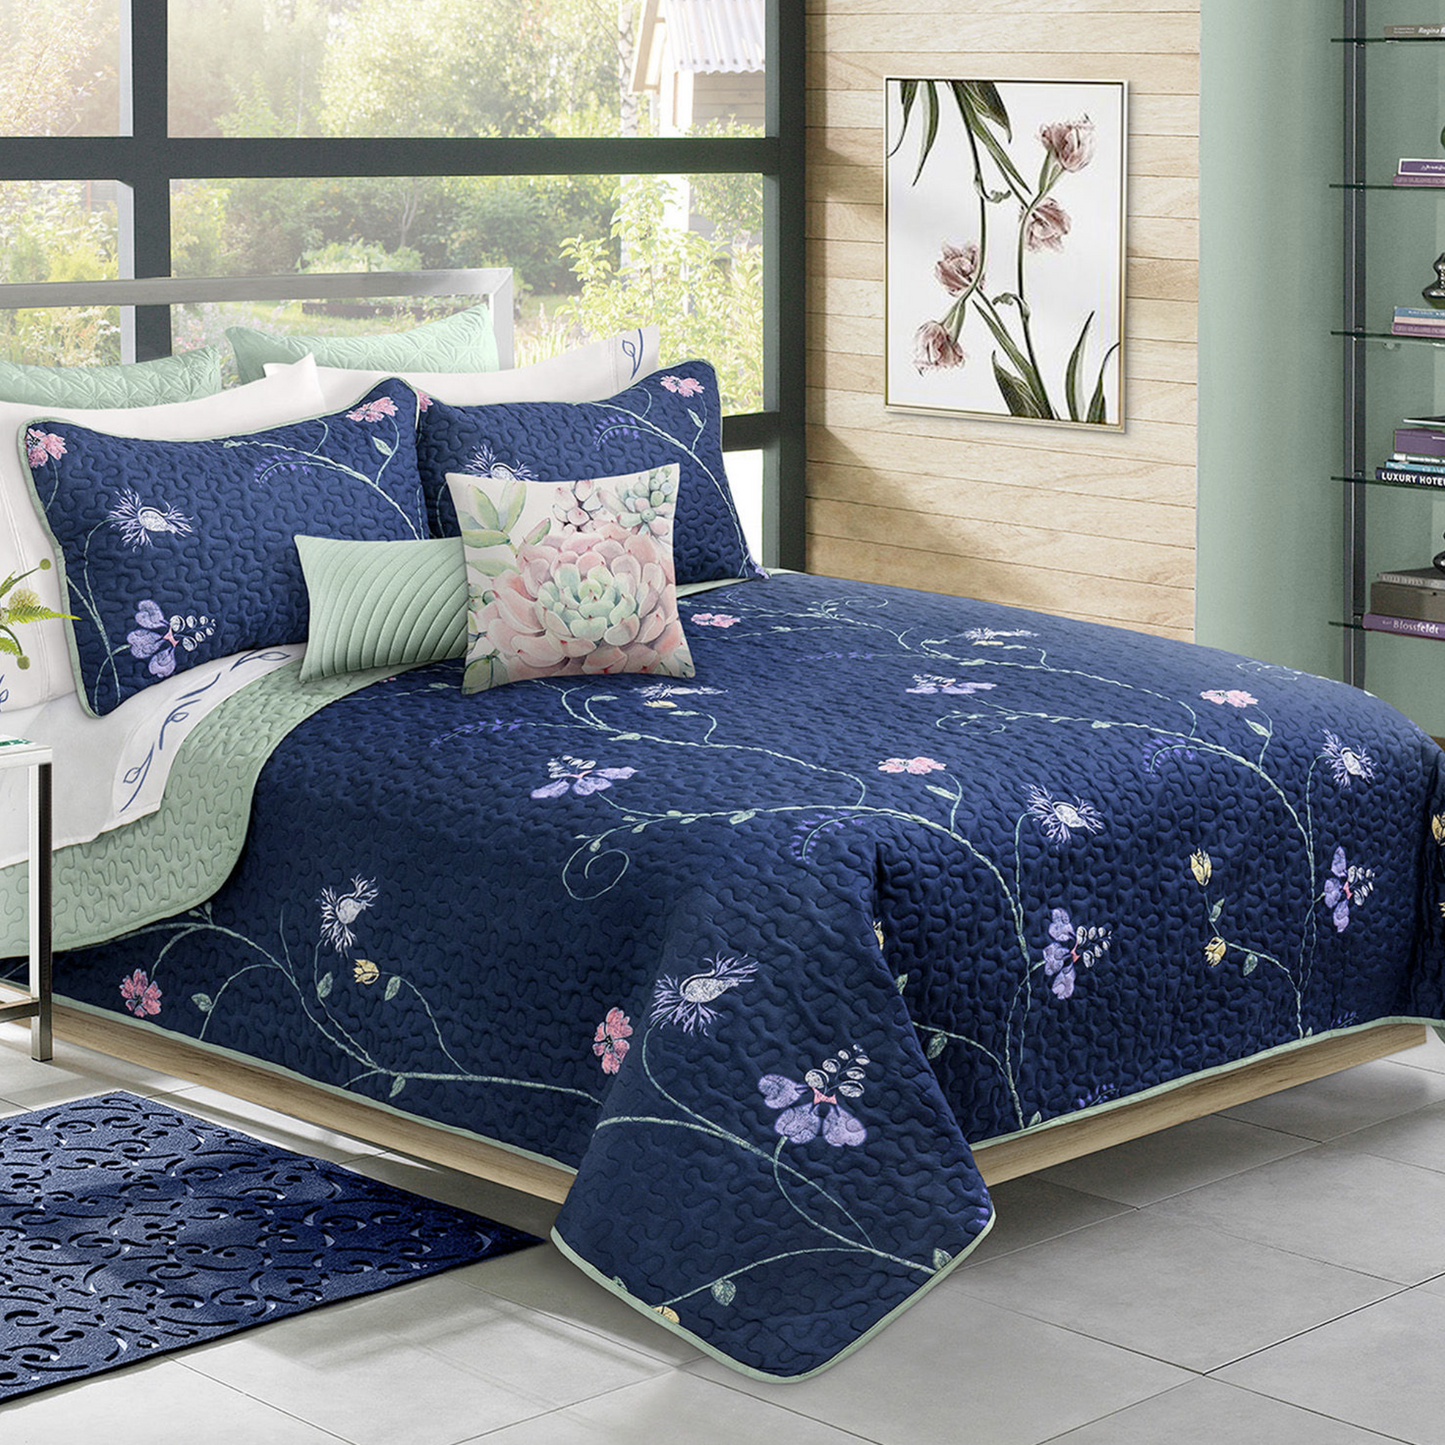 Blue Floral 3 Piece Bedding Quilt Set